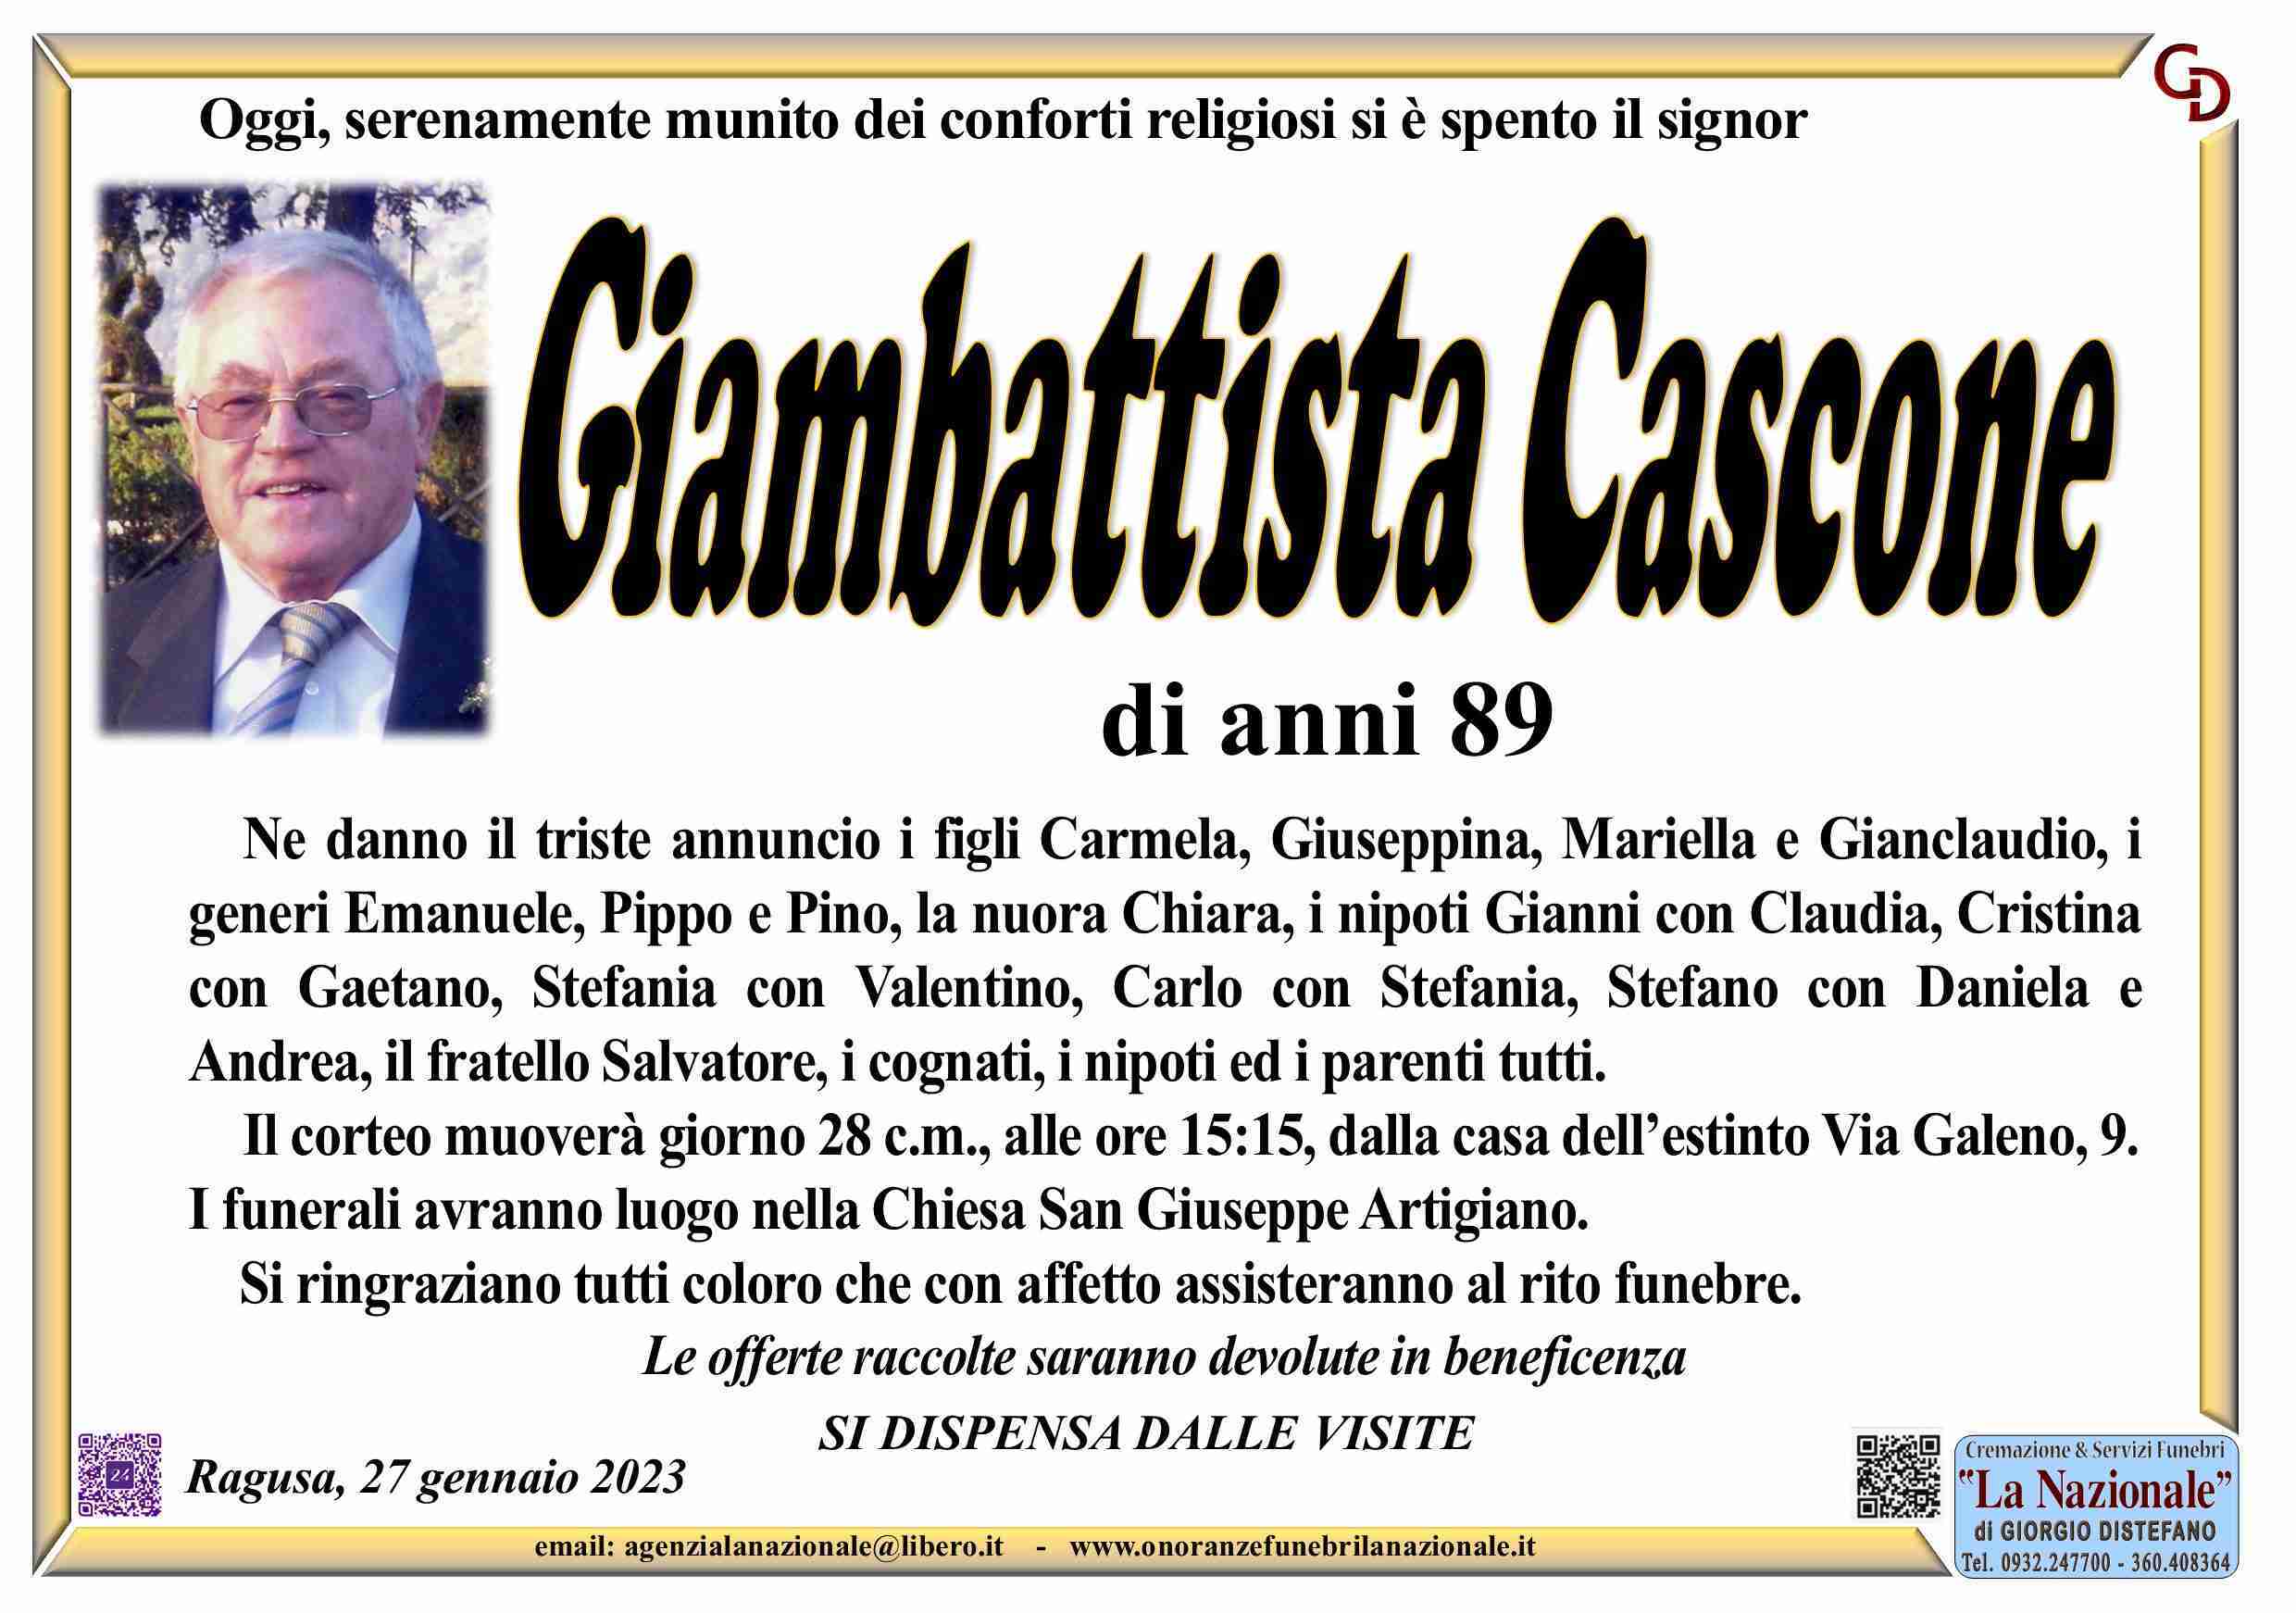 Giambattista Cascone